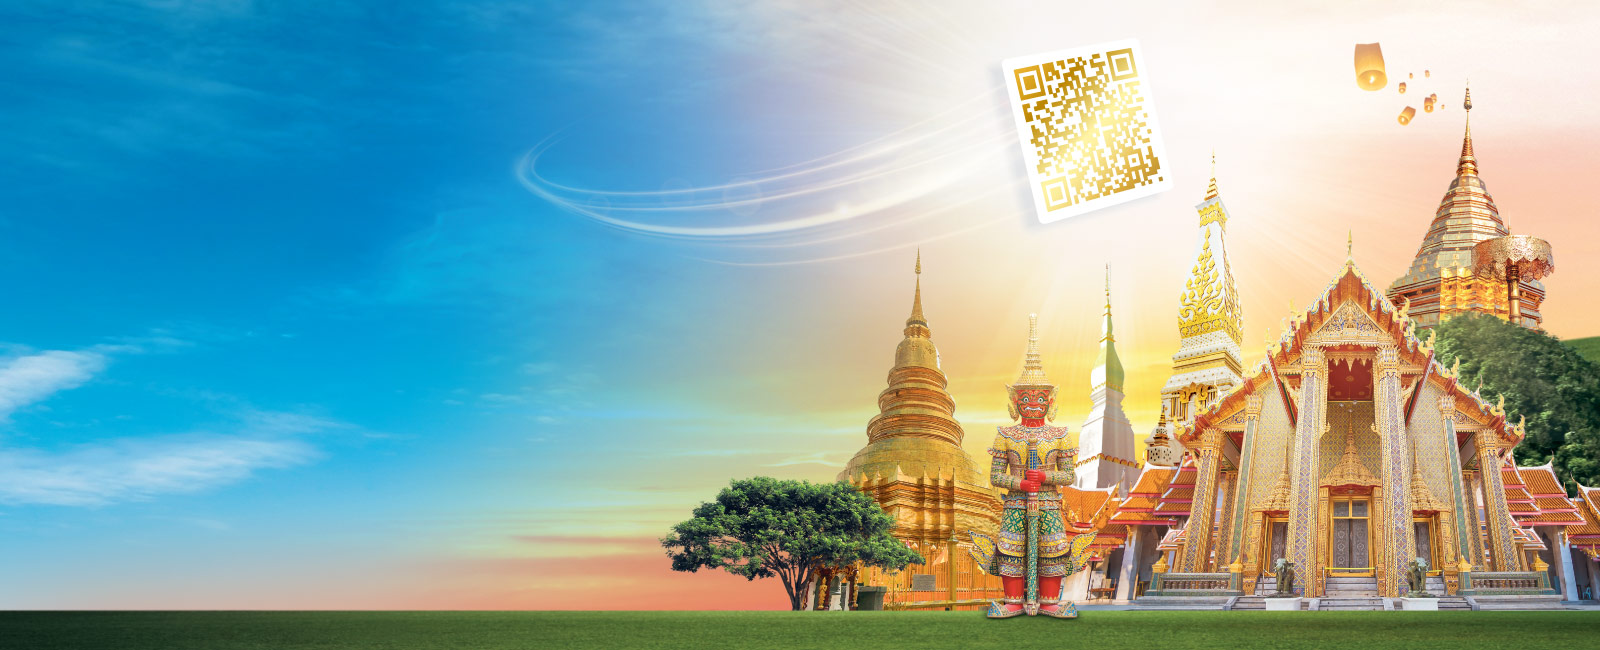 บริจาคเงินออนไลน์ด้วย กรุงไทย เติมบุญ QR e-Donation ให้วัดทั่วไทย - desktop